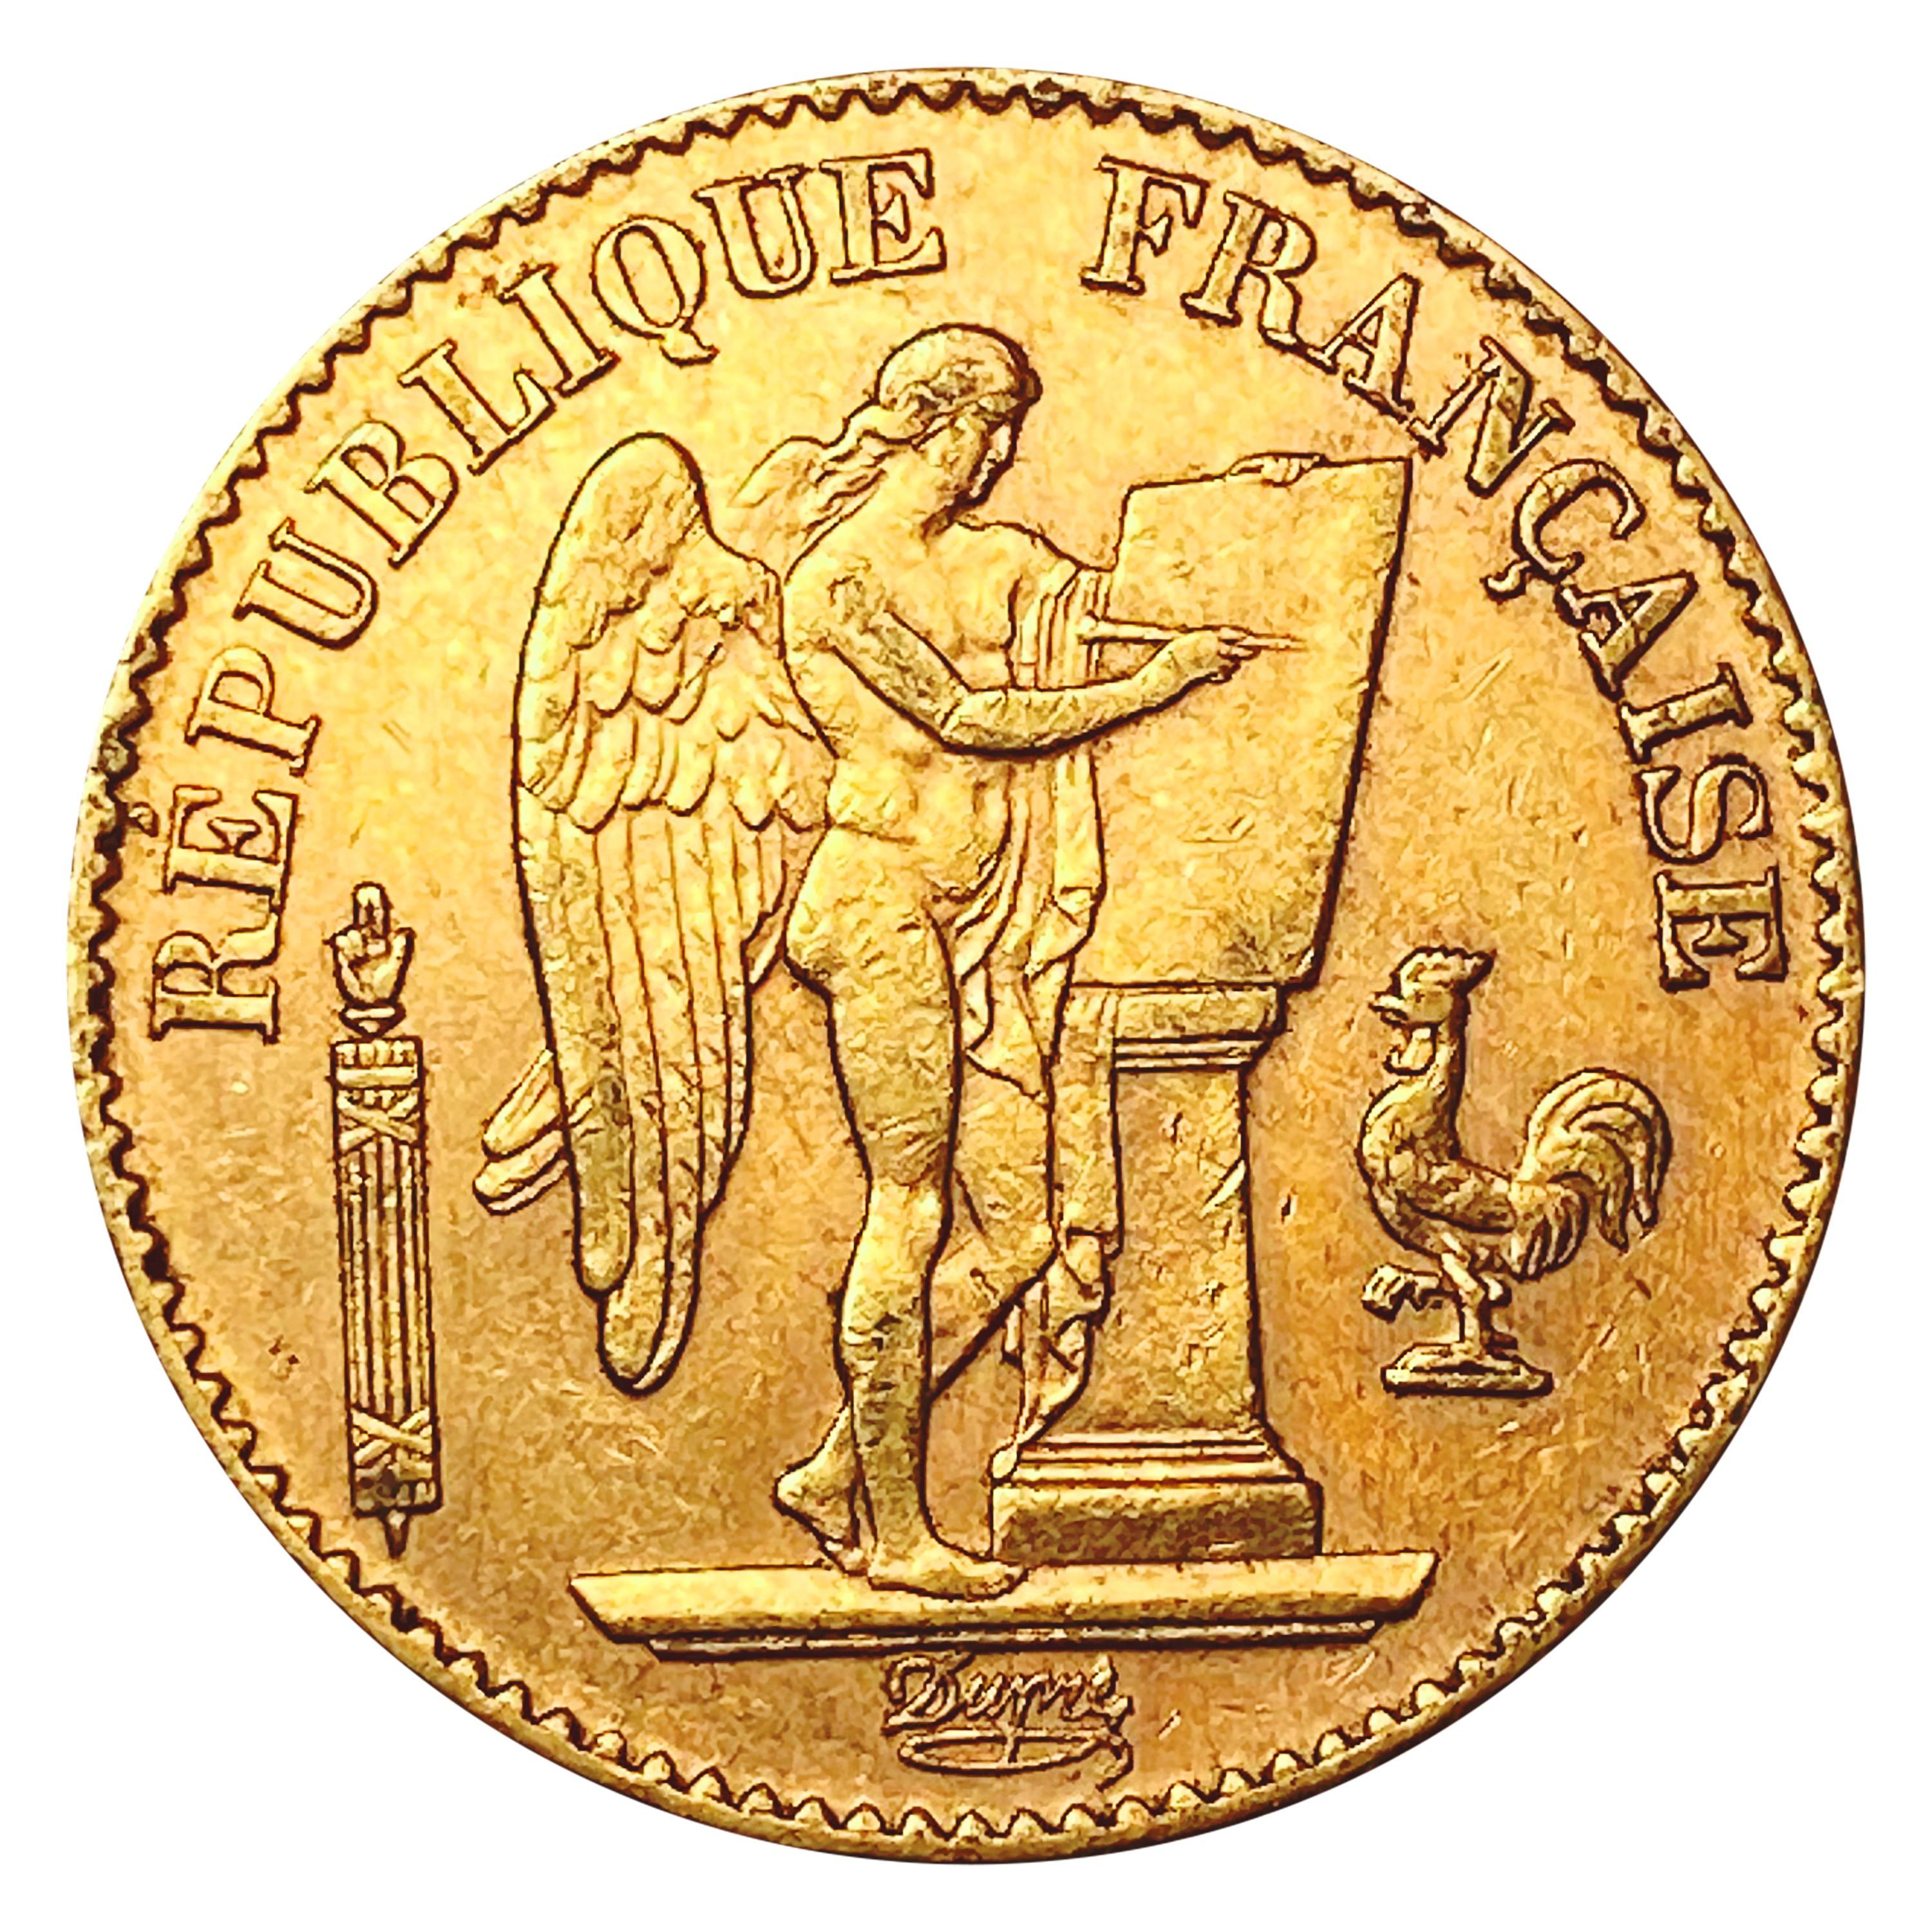 1895 France Gold 20 Francs 0.1867oz